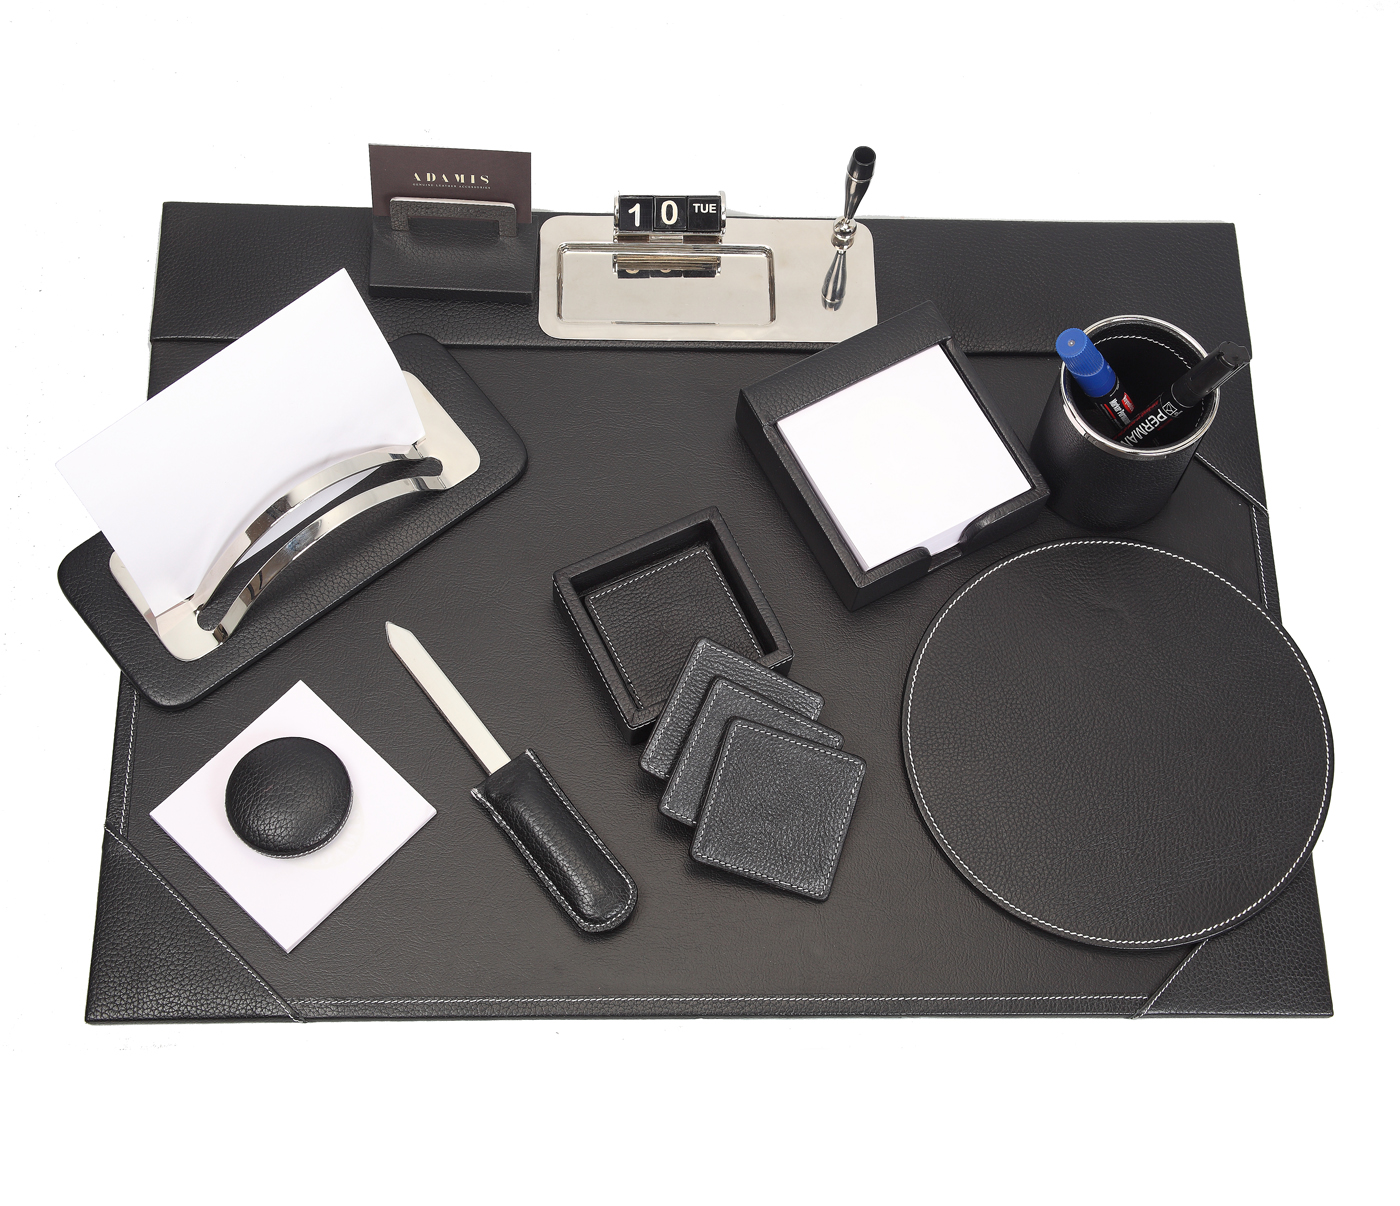  Leather Desk Set(Black)DSK1